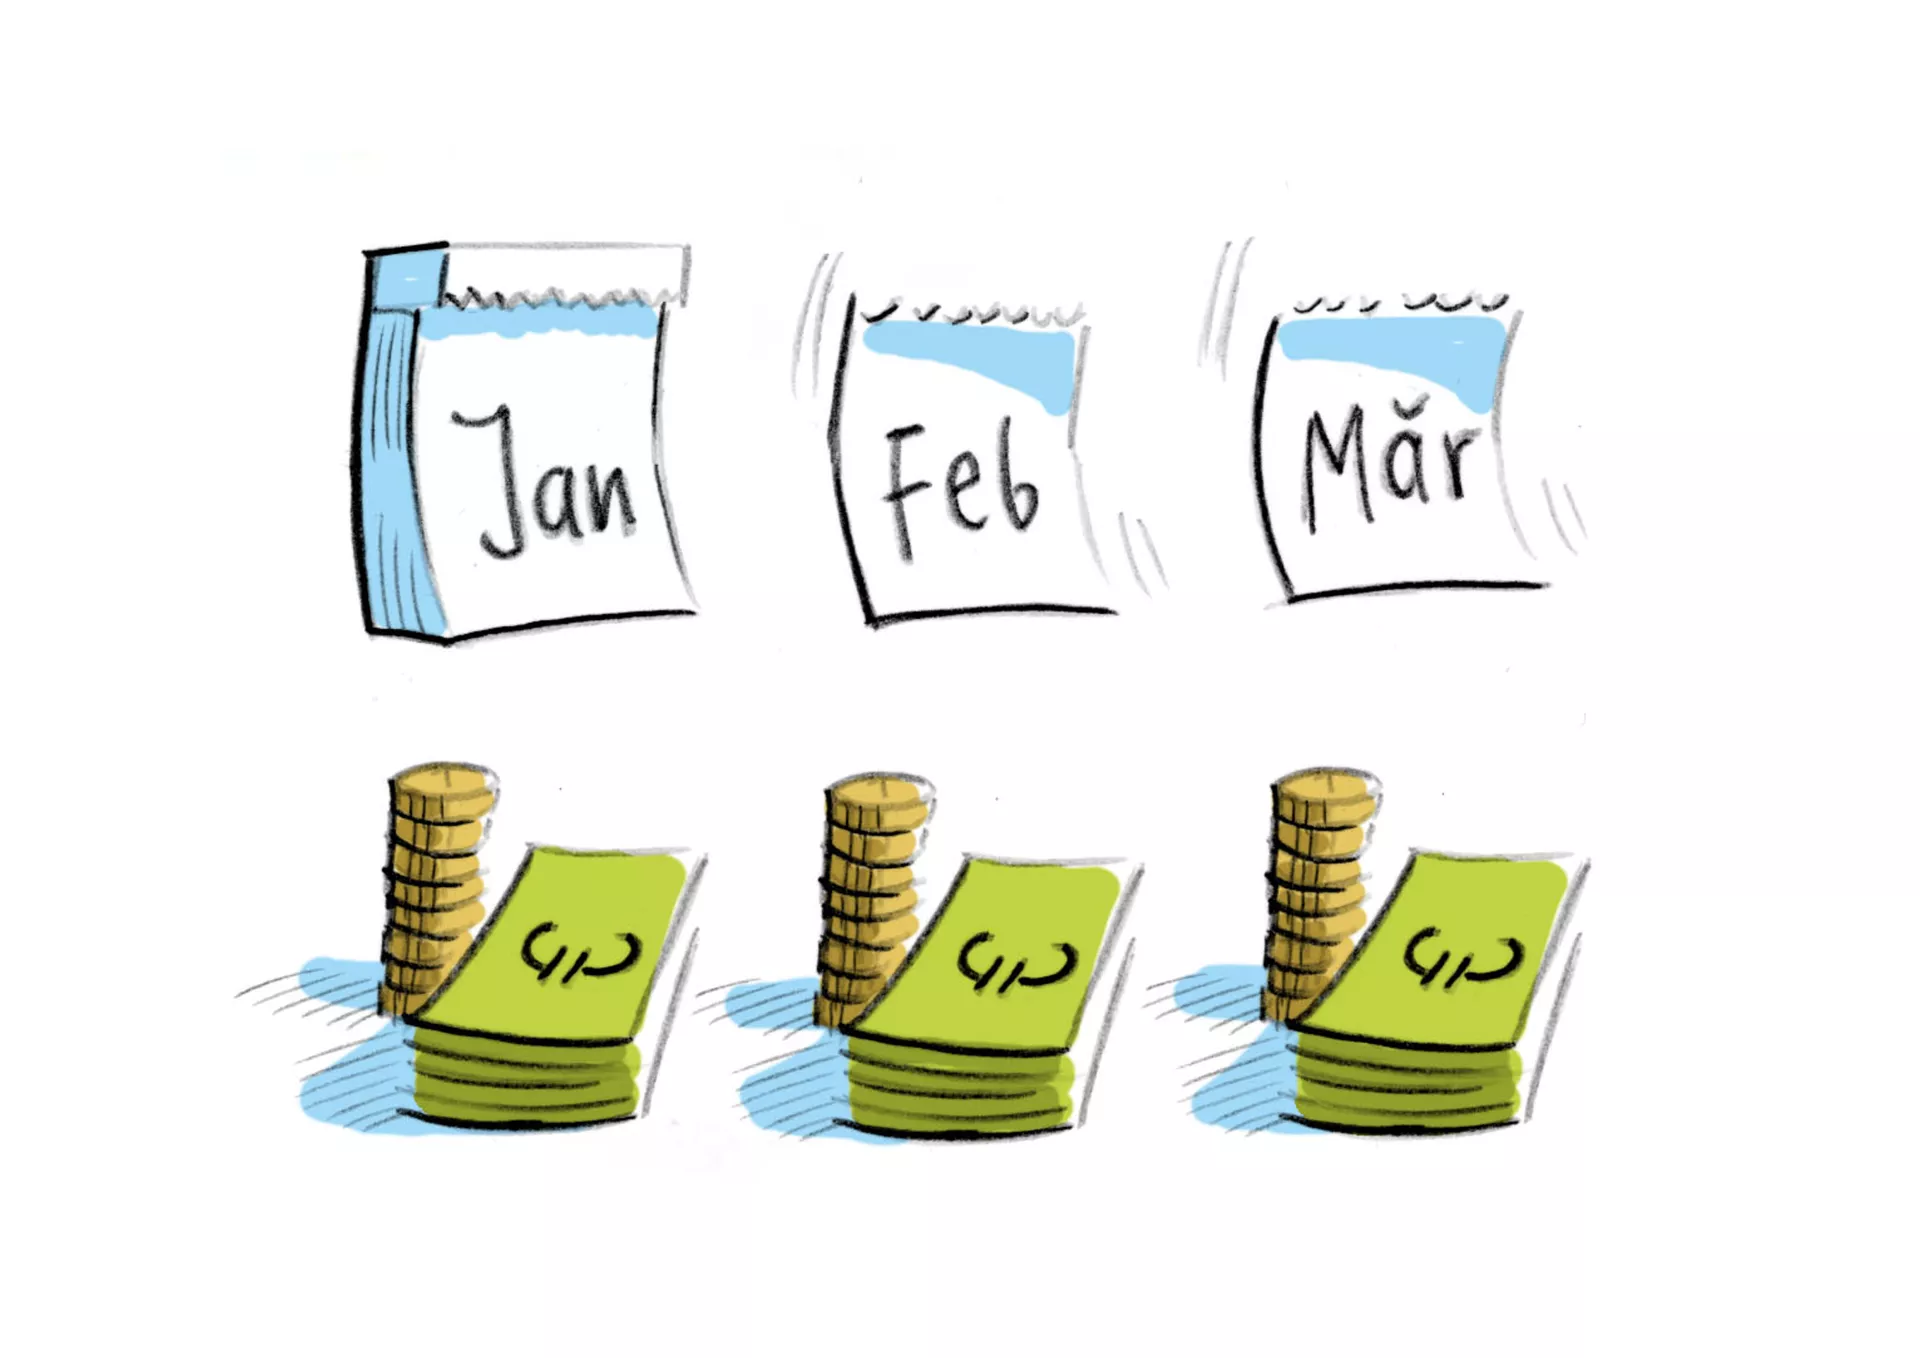 Bild: drei Kalenderblätter für Januar, Februar und März, unter jedem Kalenderblatt jeweils Geldscheine und Münzen